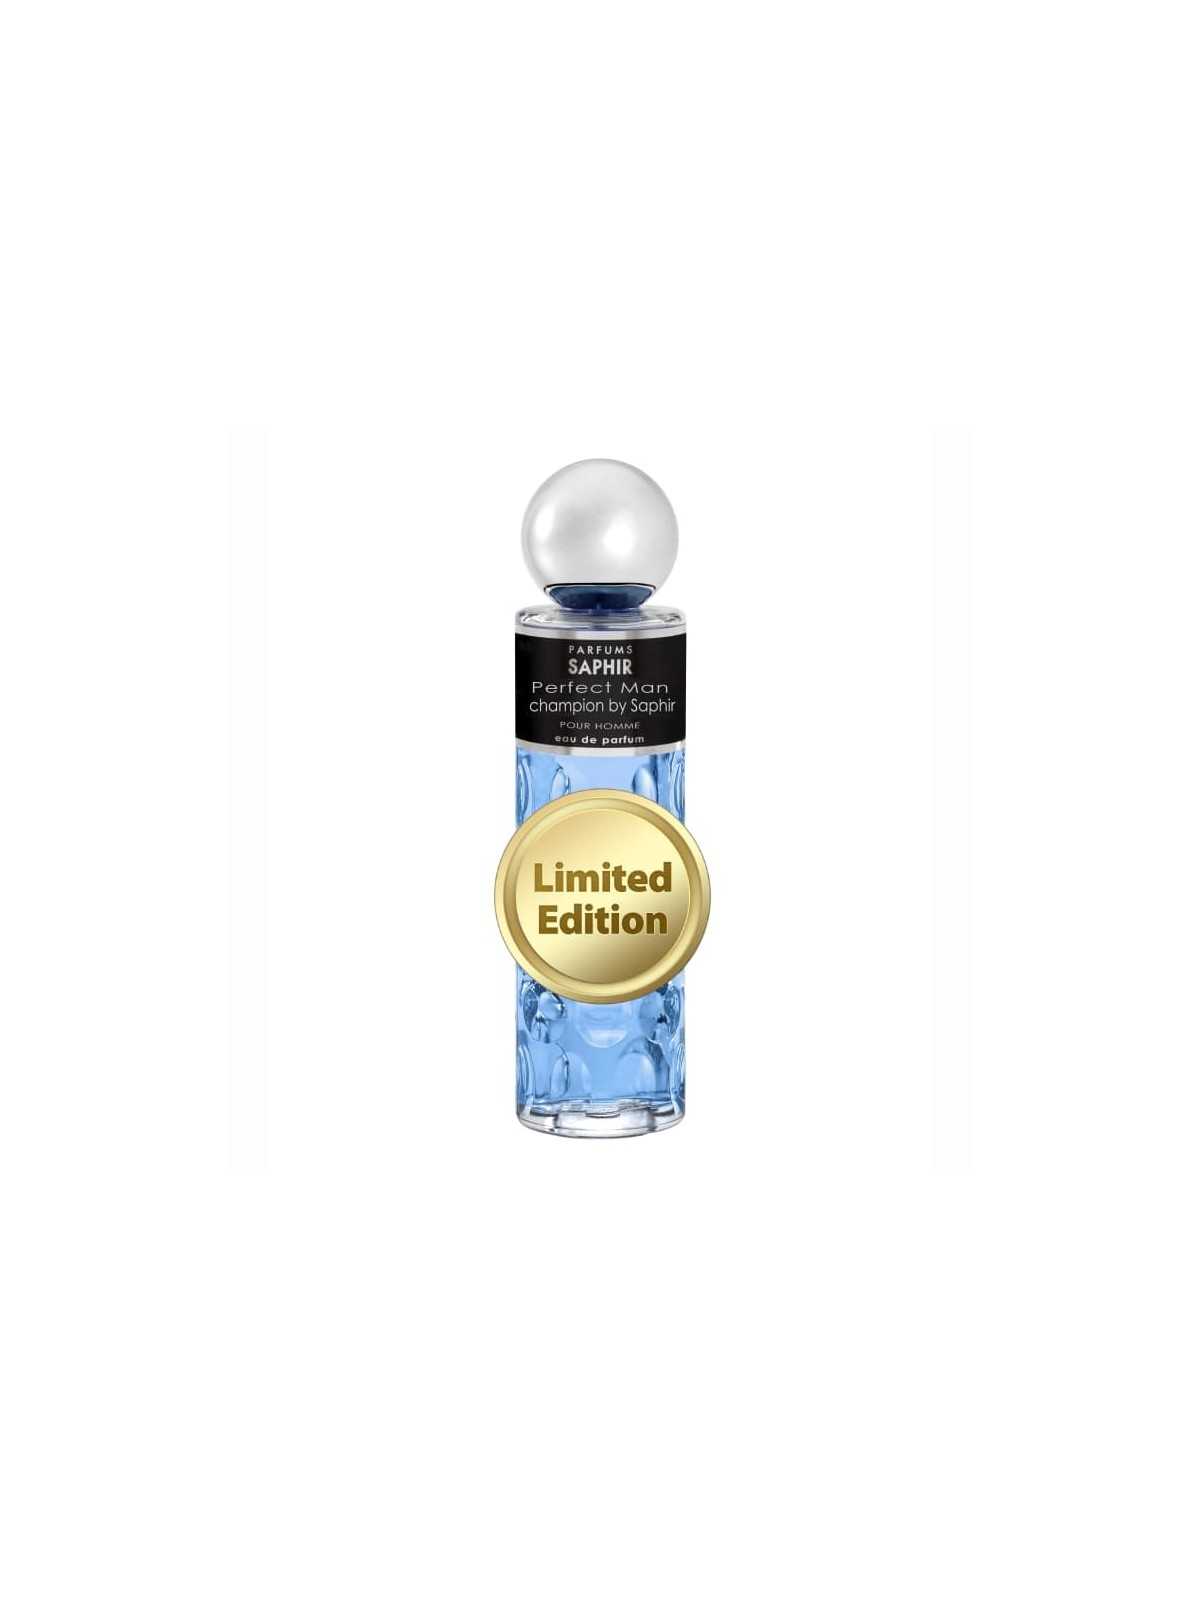 Comprar Perfume Saphir Perfect Man Champion Edición Limitada 200ml en Perfumes para hombre por sólo 13,90 € o un precio específico de 13,90 € en Thalie Care